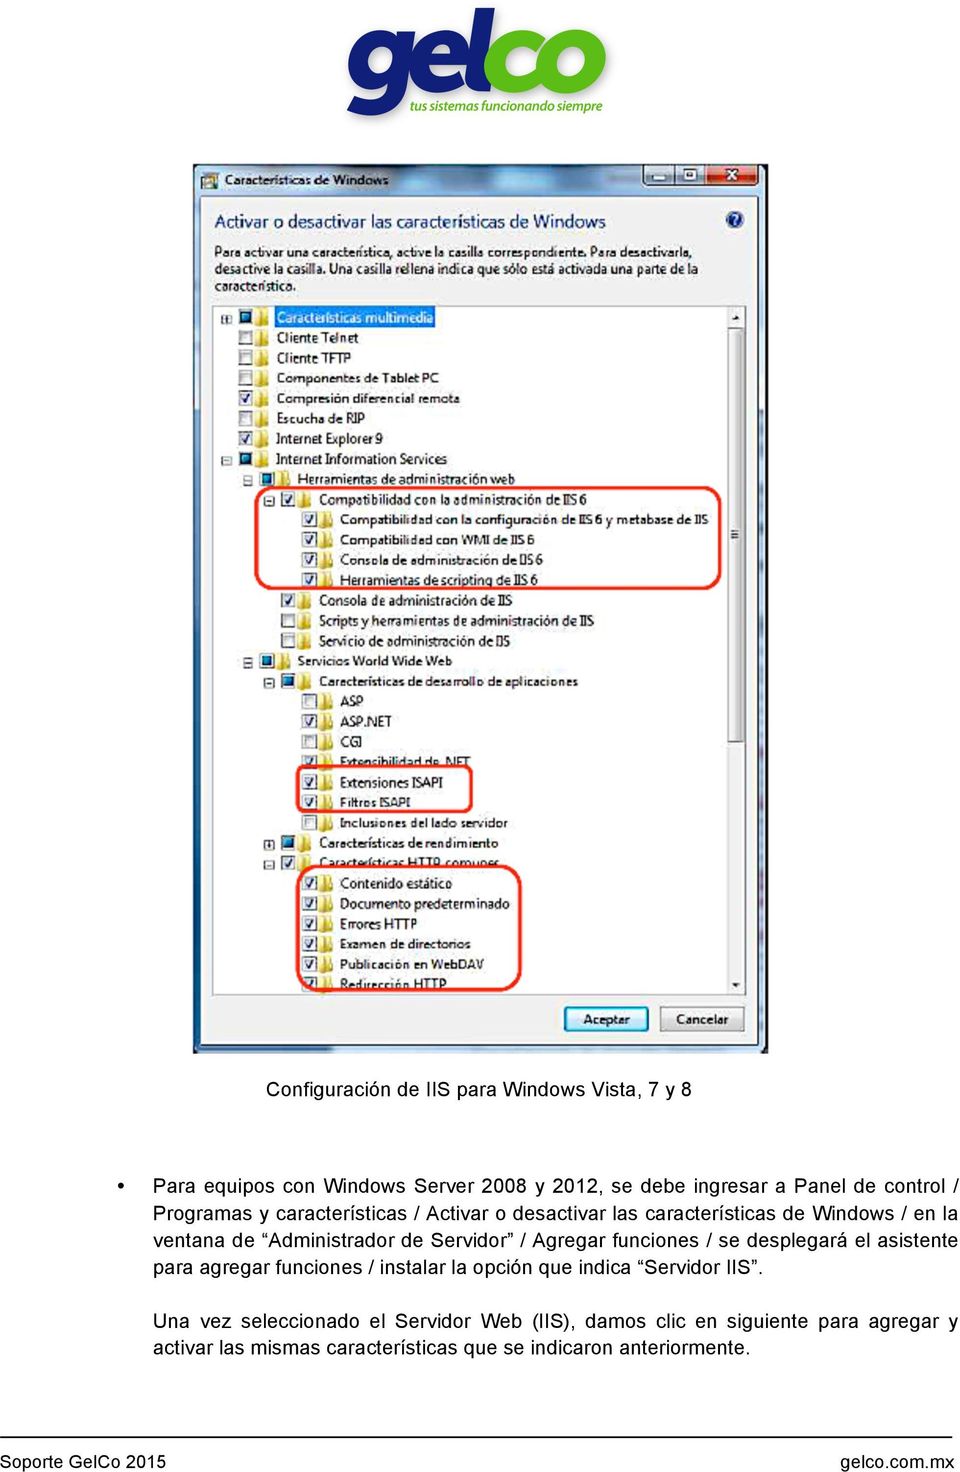 Agregar funciones / se desplegará el asistente para agregar funciones / instalar la opción que indica Servidor IIS.